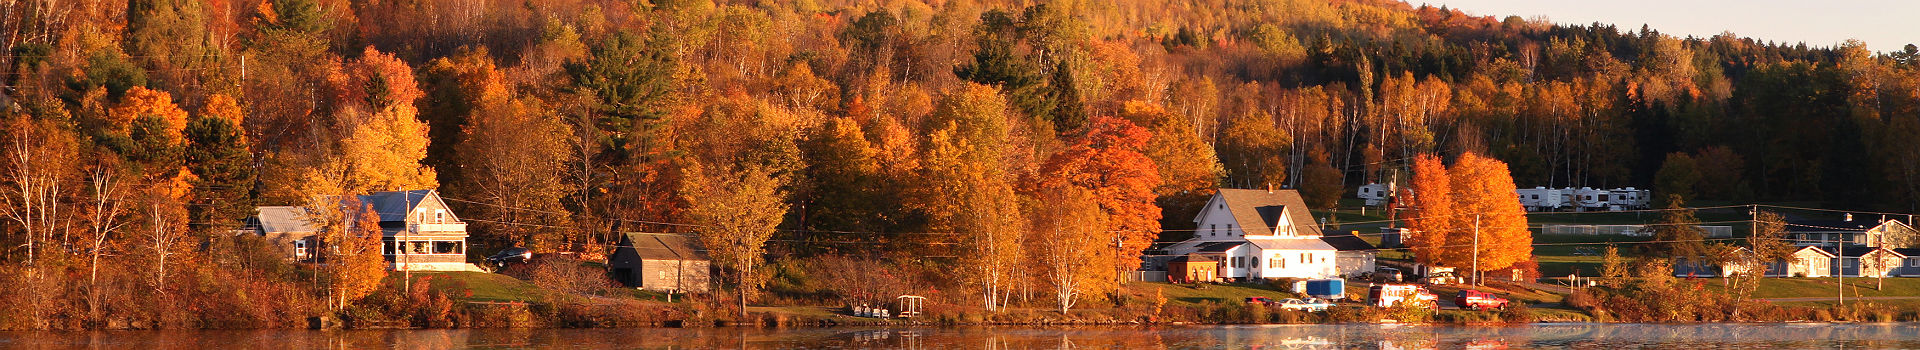 Rivière Saint John au Nouveau-Brunswick en automne - Canada